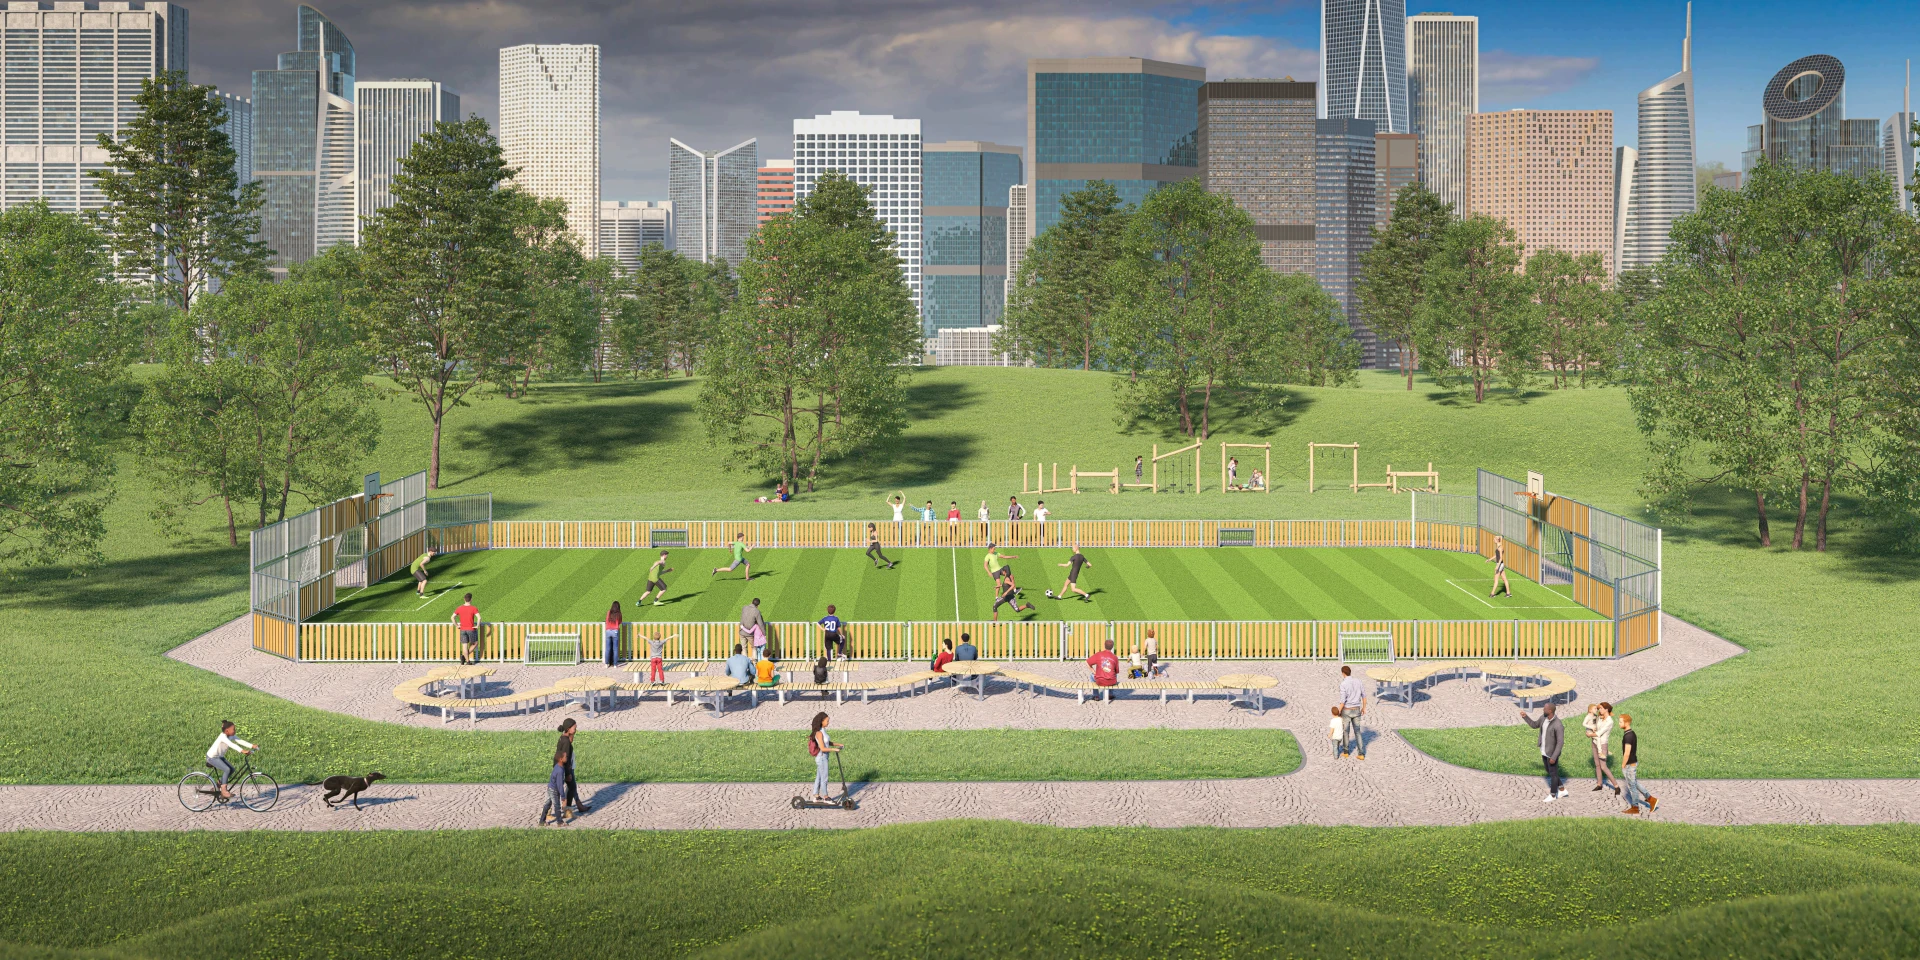 Idea de diseño de una pista polideportiva en un parque